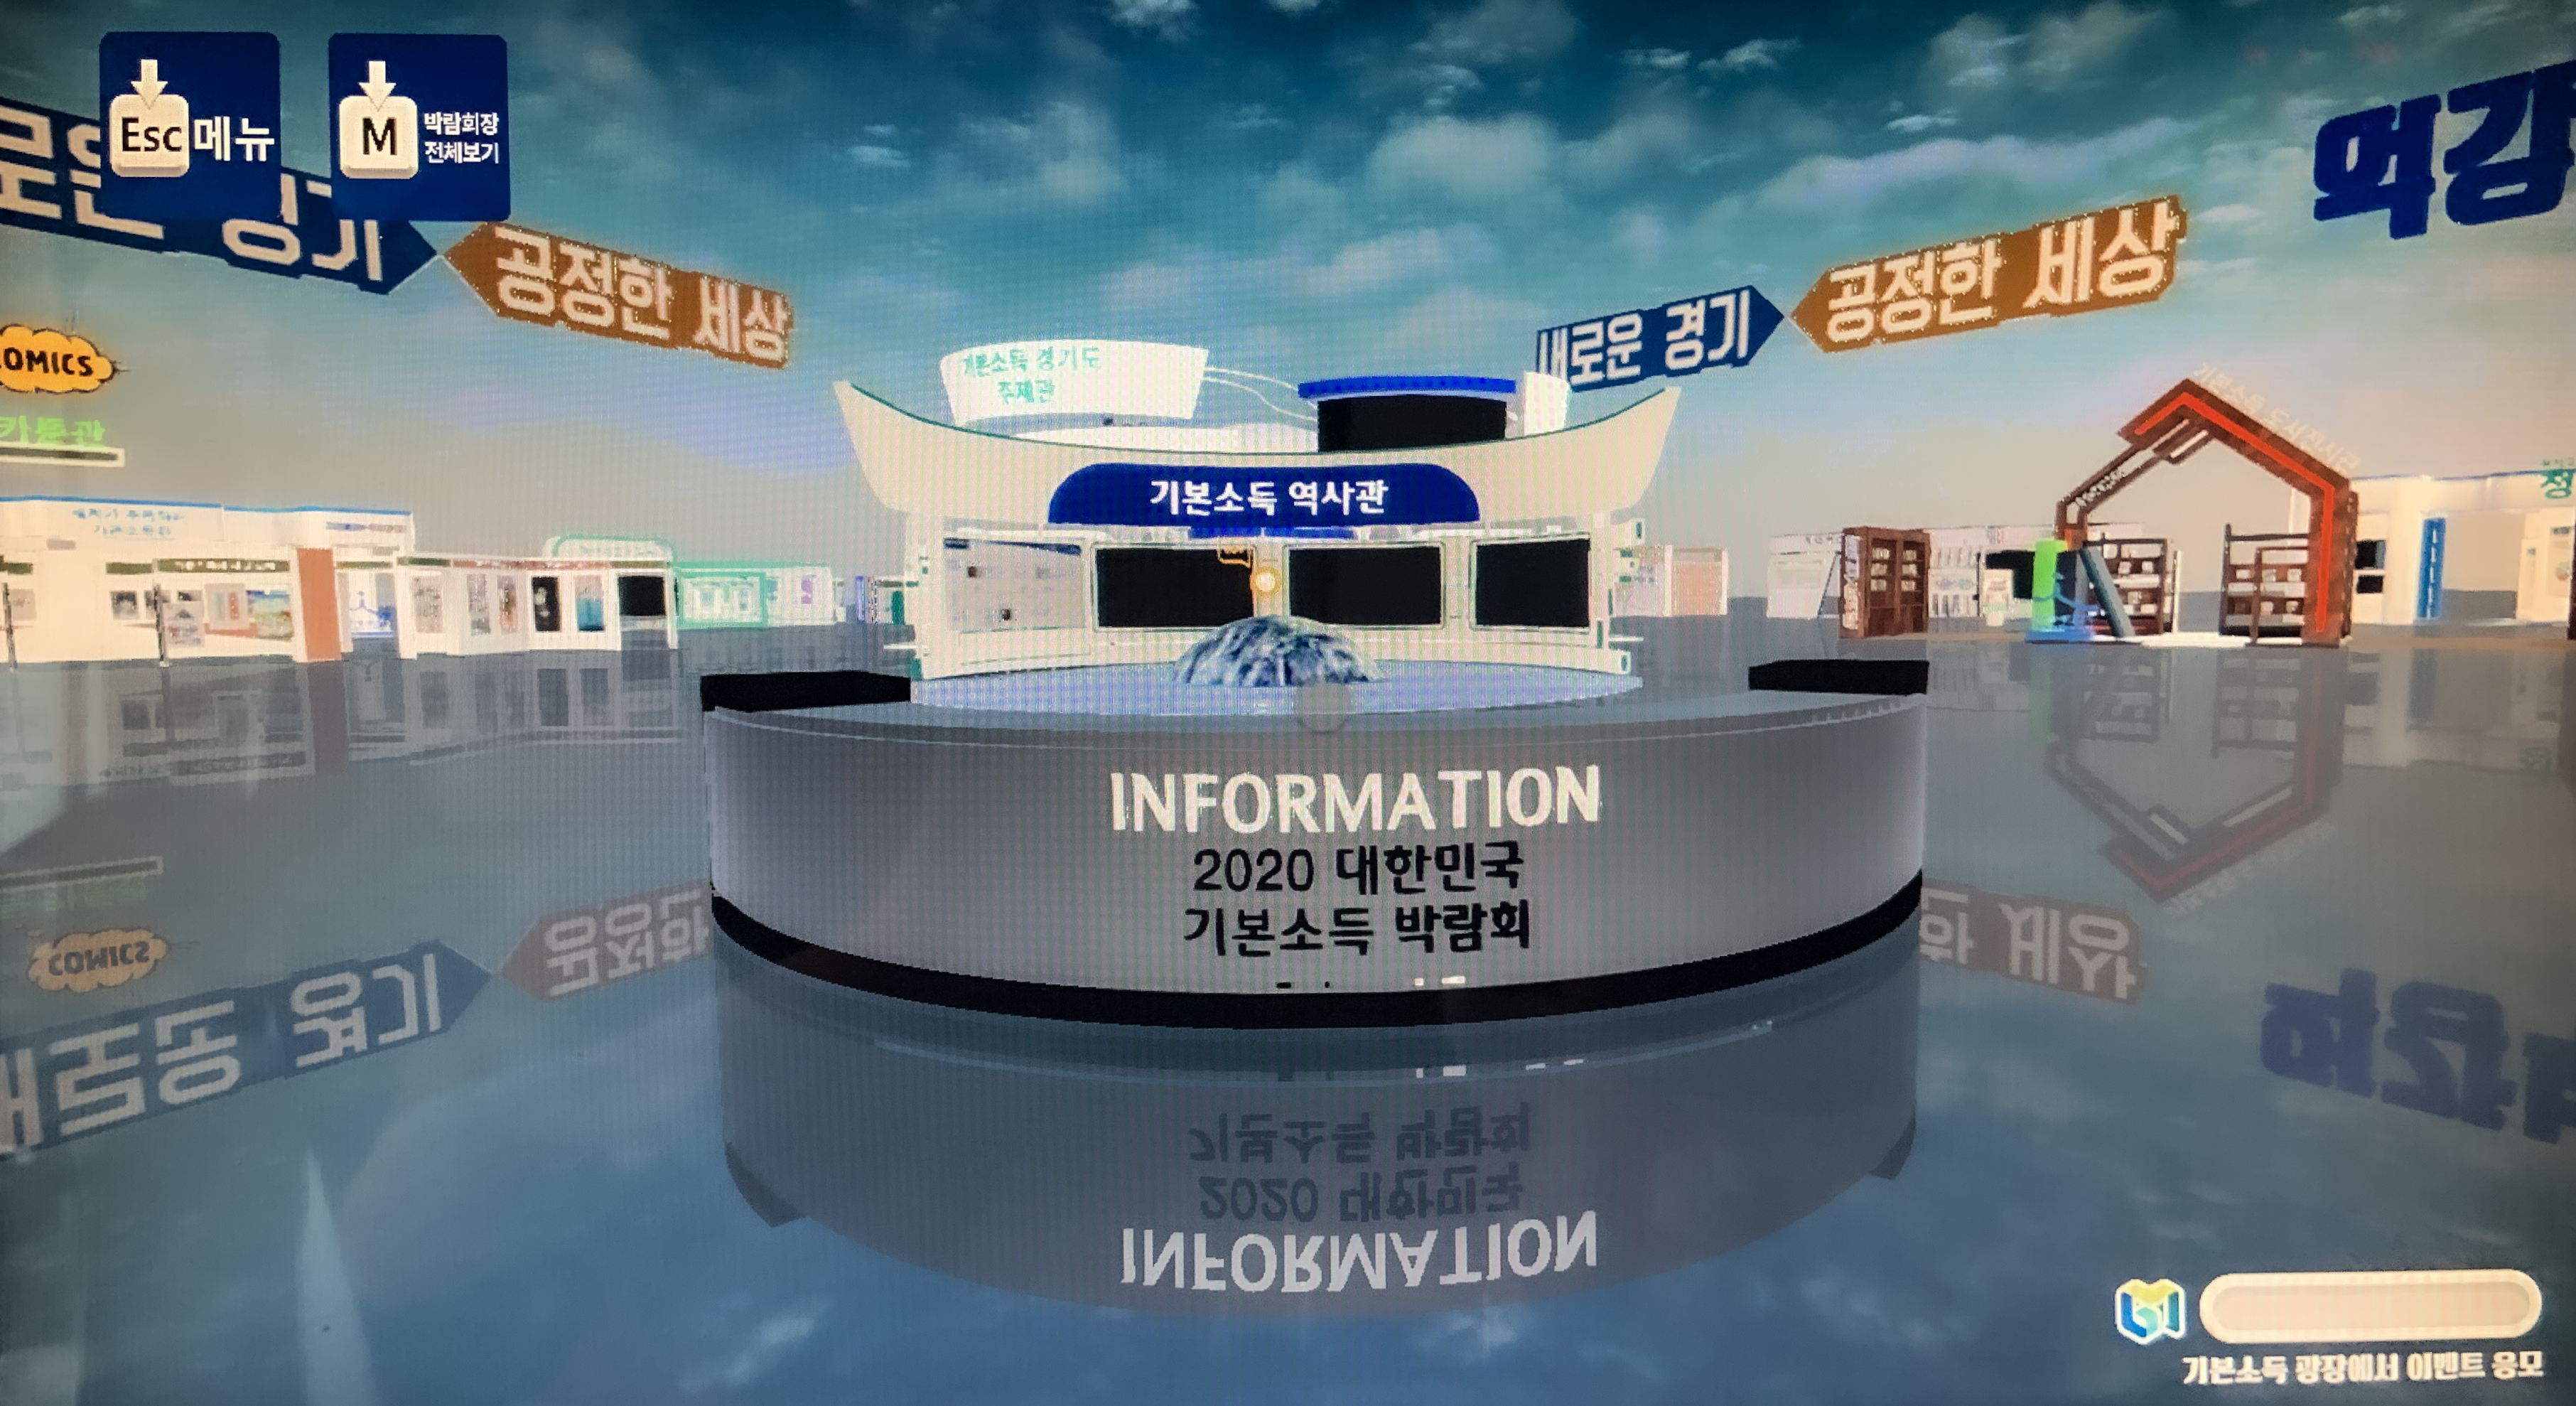 2020 대한민국 기본소득 박람회 전시관